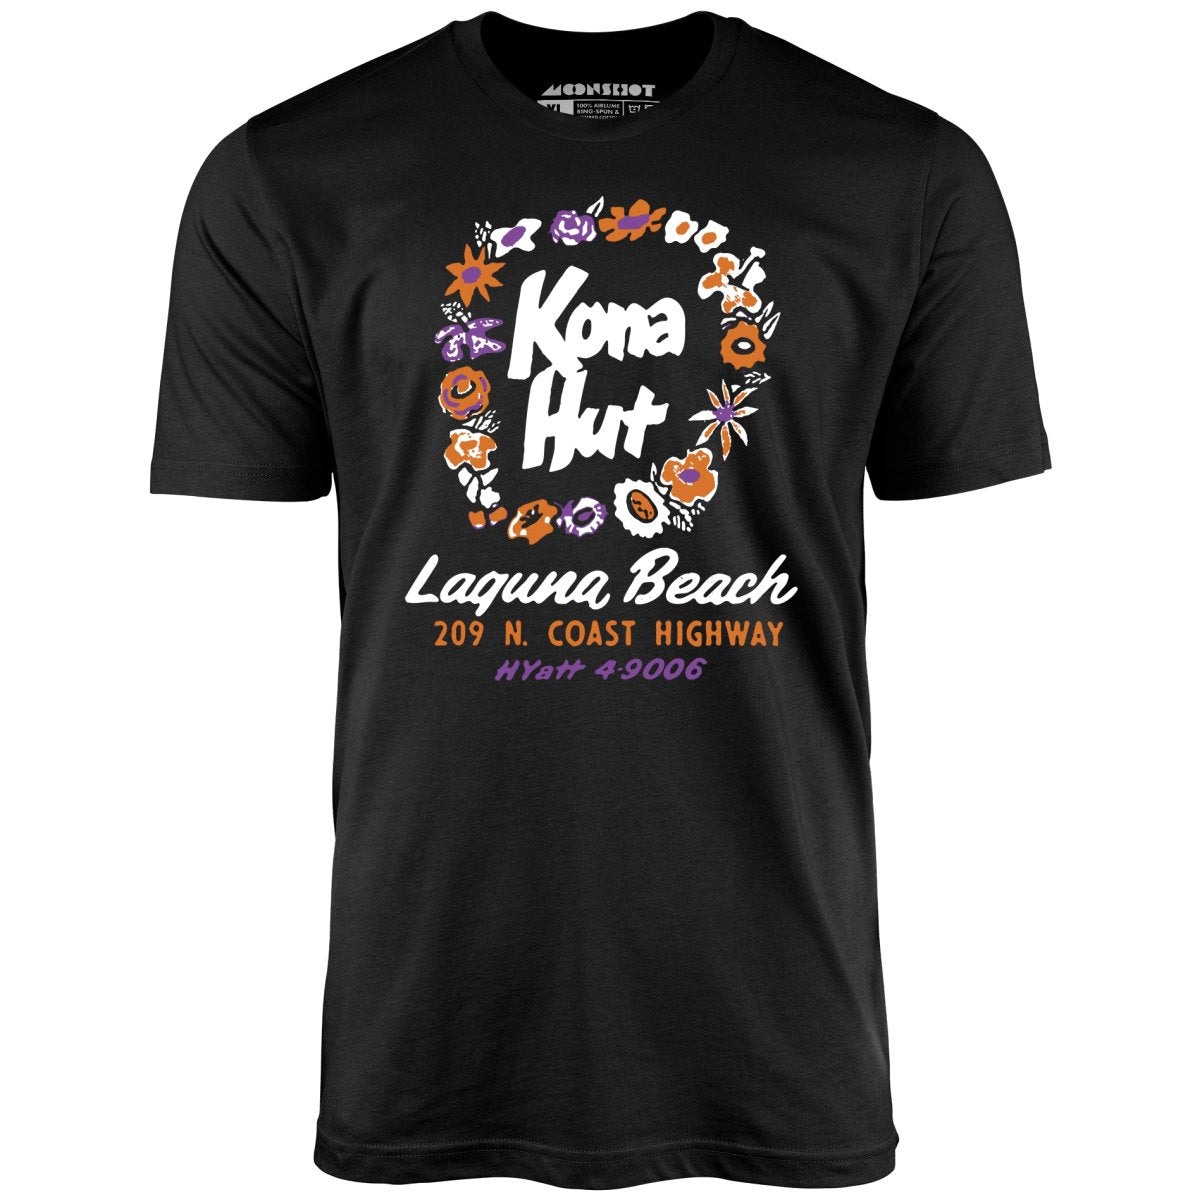 Kona Hut - Laguna Beach, CA - Vintage Tiki Bar - Unisex T-Shirt